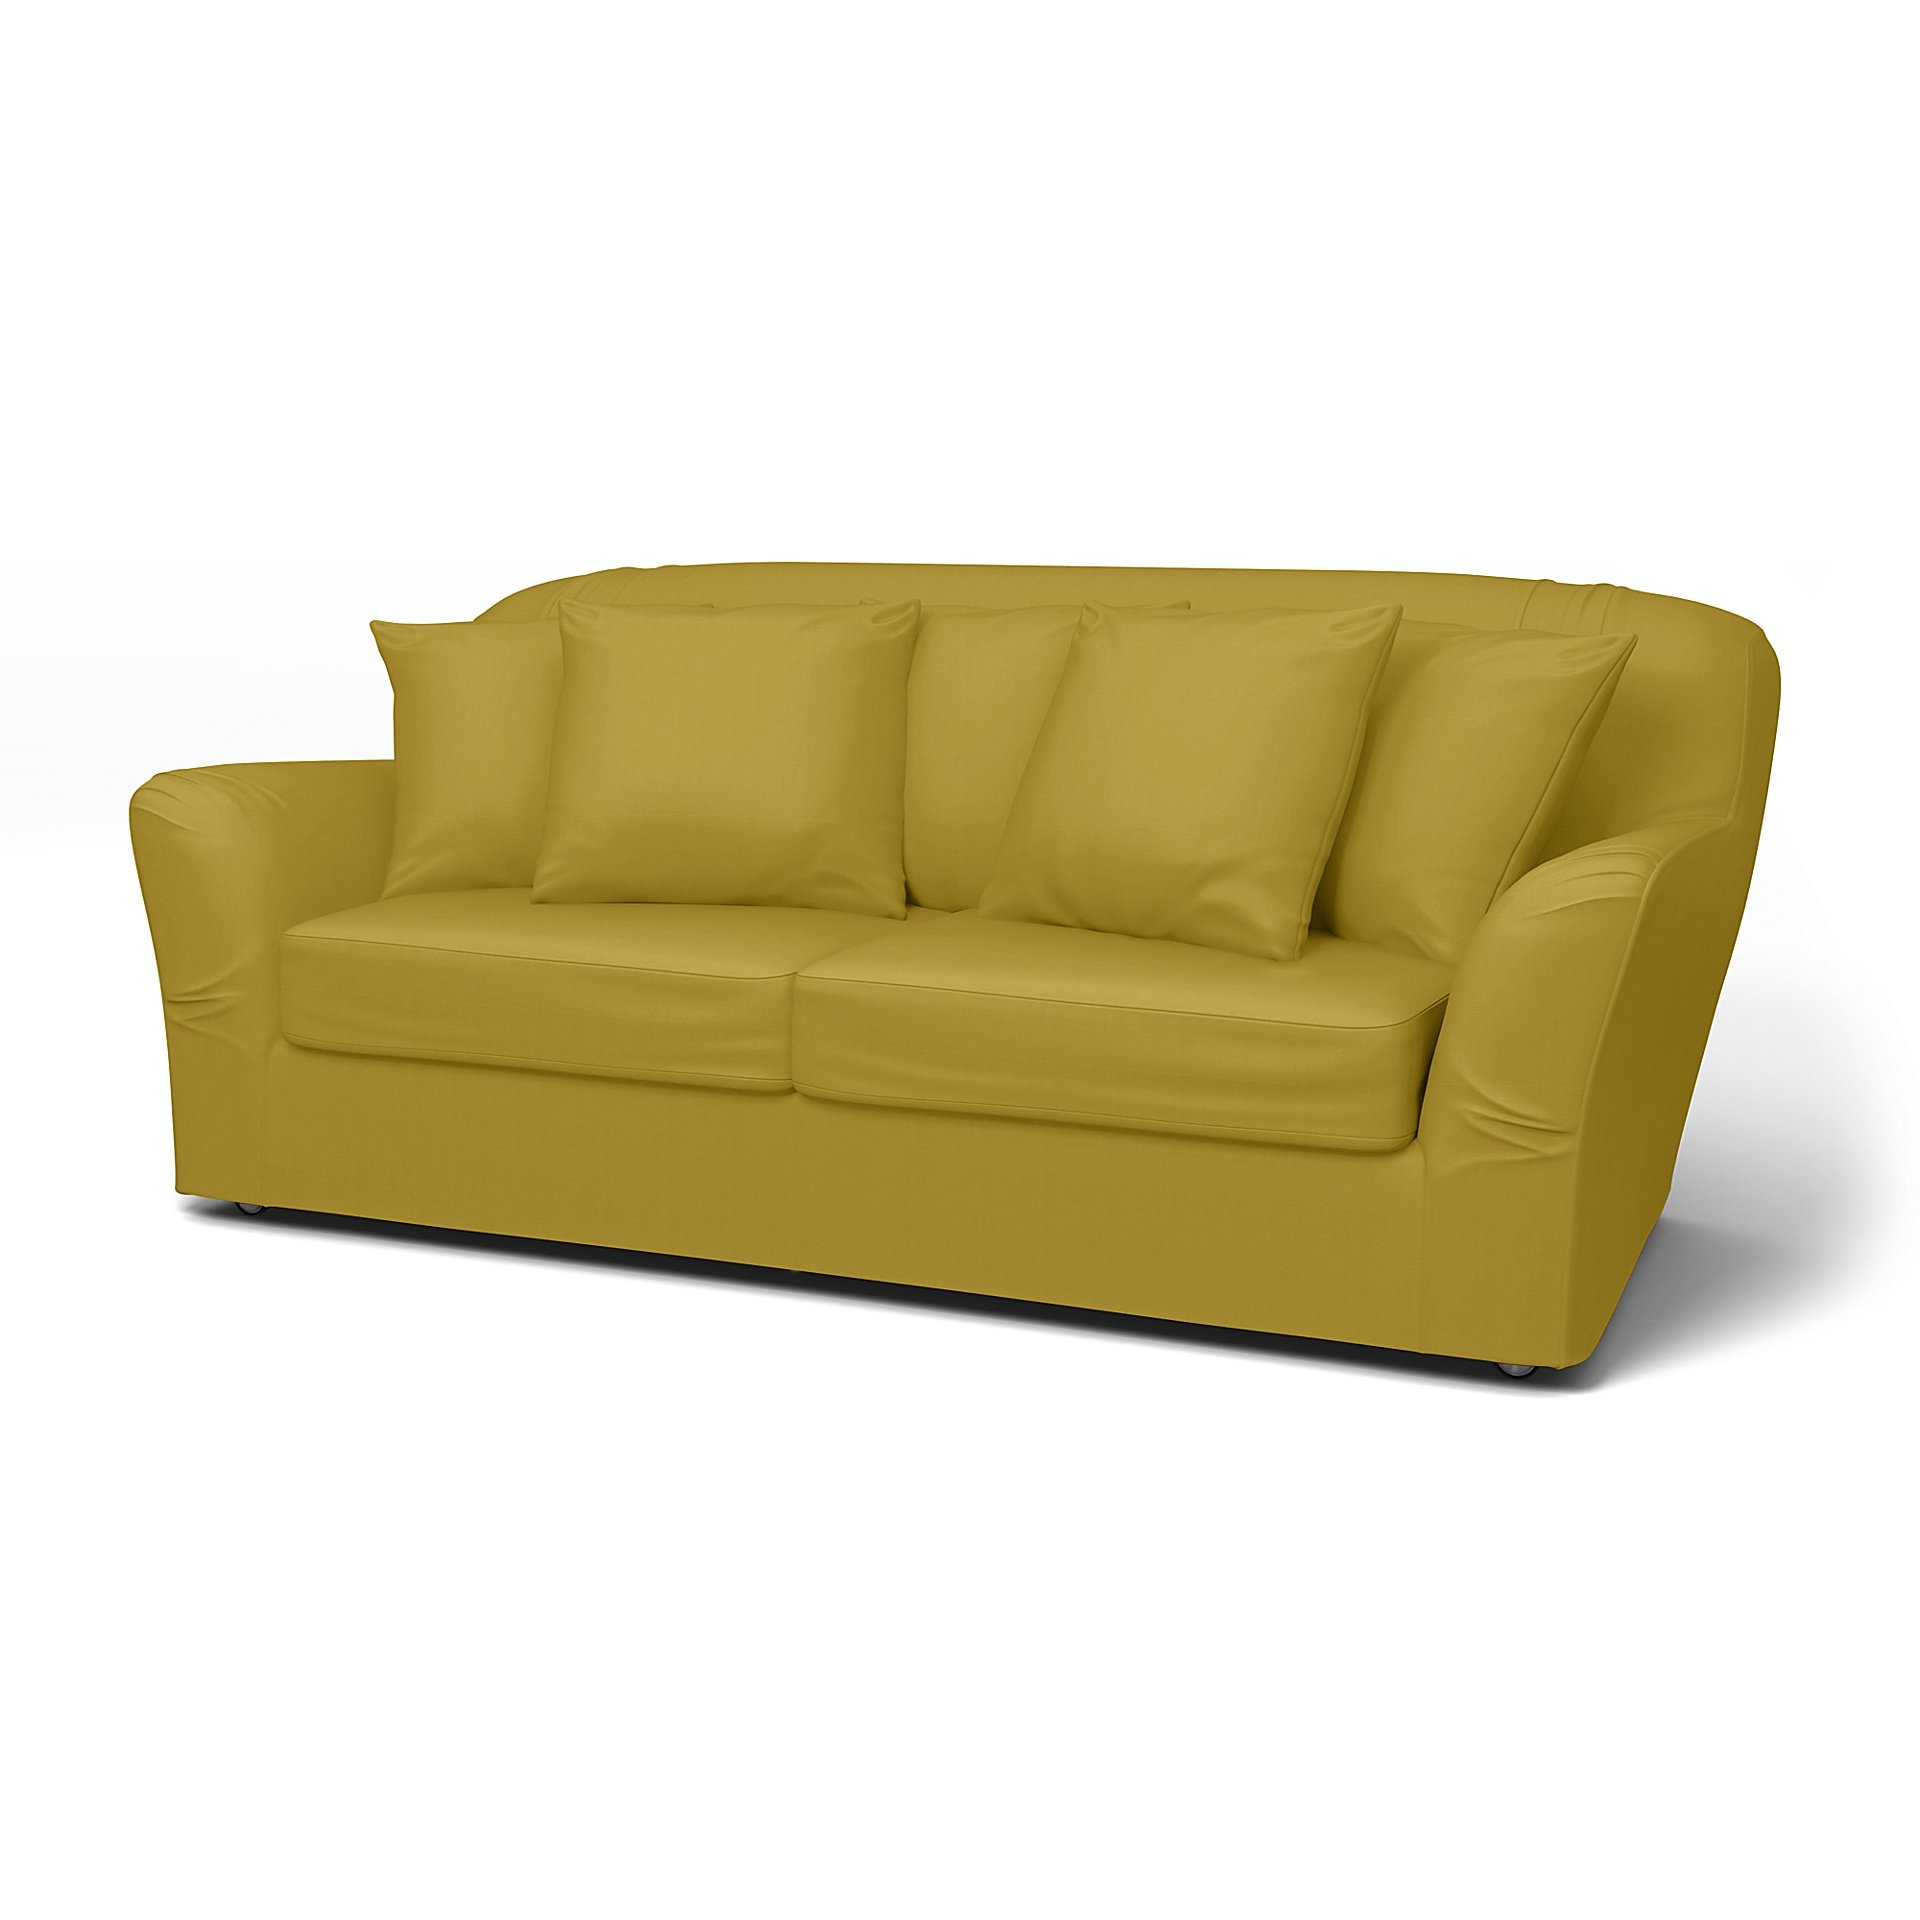 IKEA - Tomelilla Sofa Bed Cover (Small model), Olive Oil, Cotton - Bemz